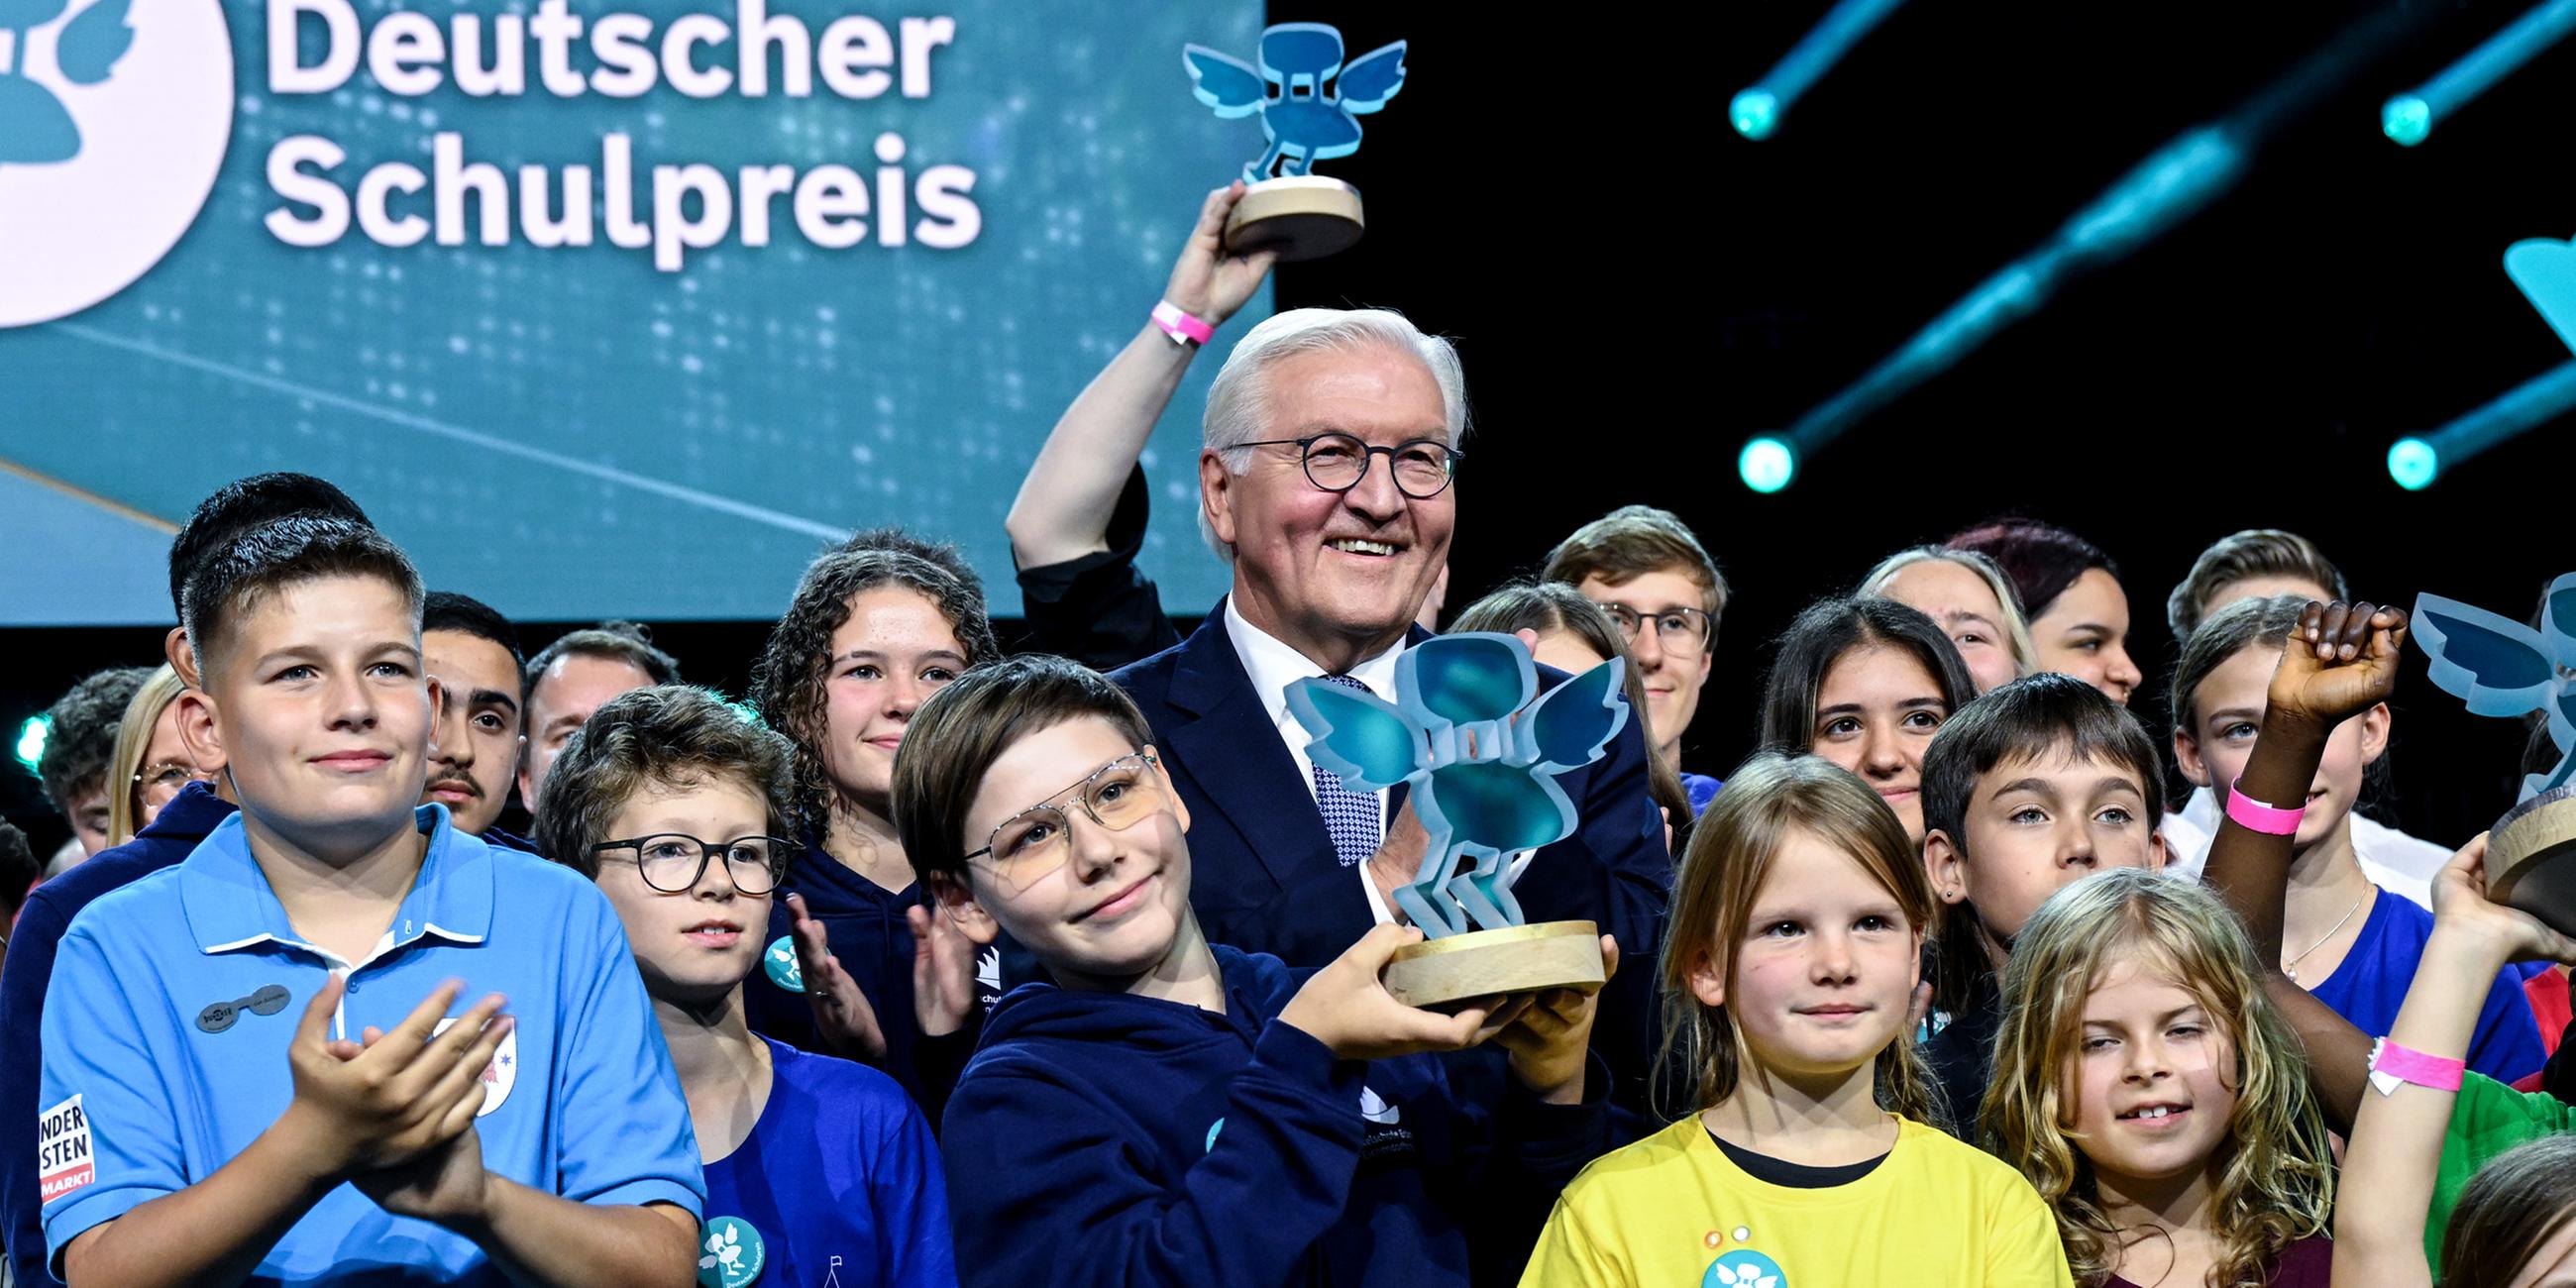 Bundespräsident Frank-Walter Steinmeier freut sich am 12.10.2023 bei der Verleihung das Schulpreises 2023 mit den Schülern der verschiedenen Schulen, die ausgezeichnet wurden.